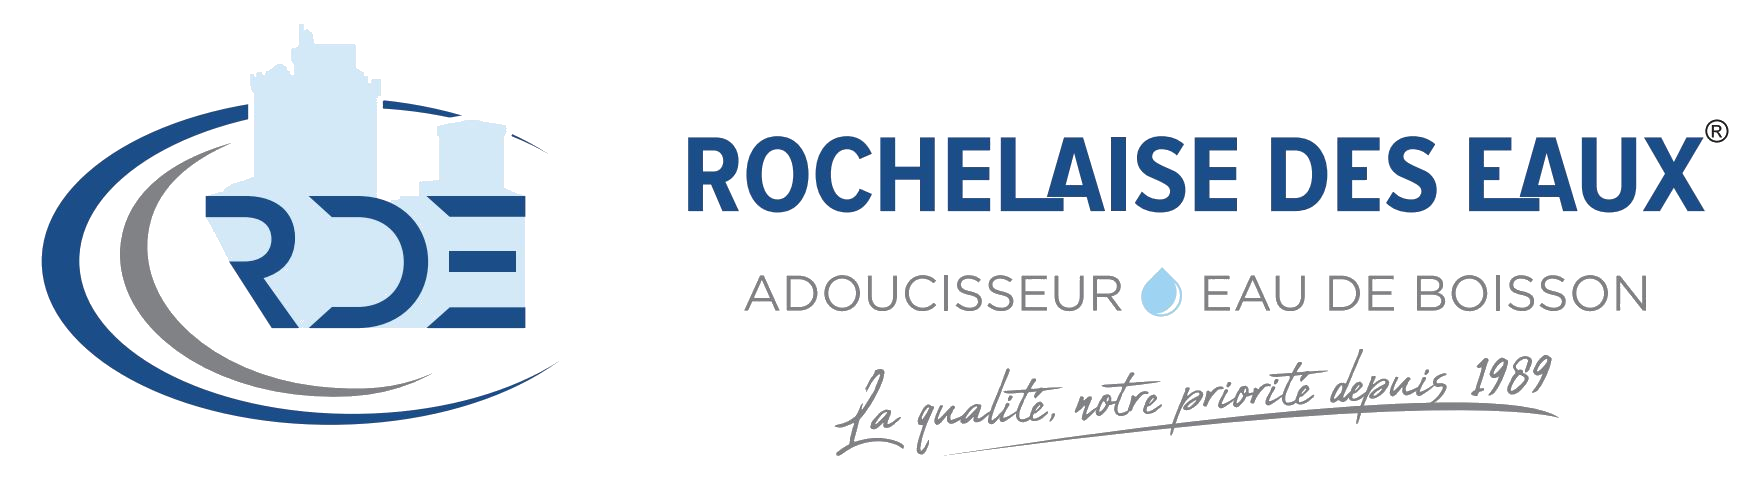 Adoucisseur d'eau La Rochelle - Réparation d'adoucisseur d'eau toute marque Saintes